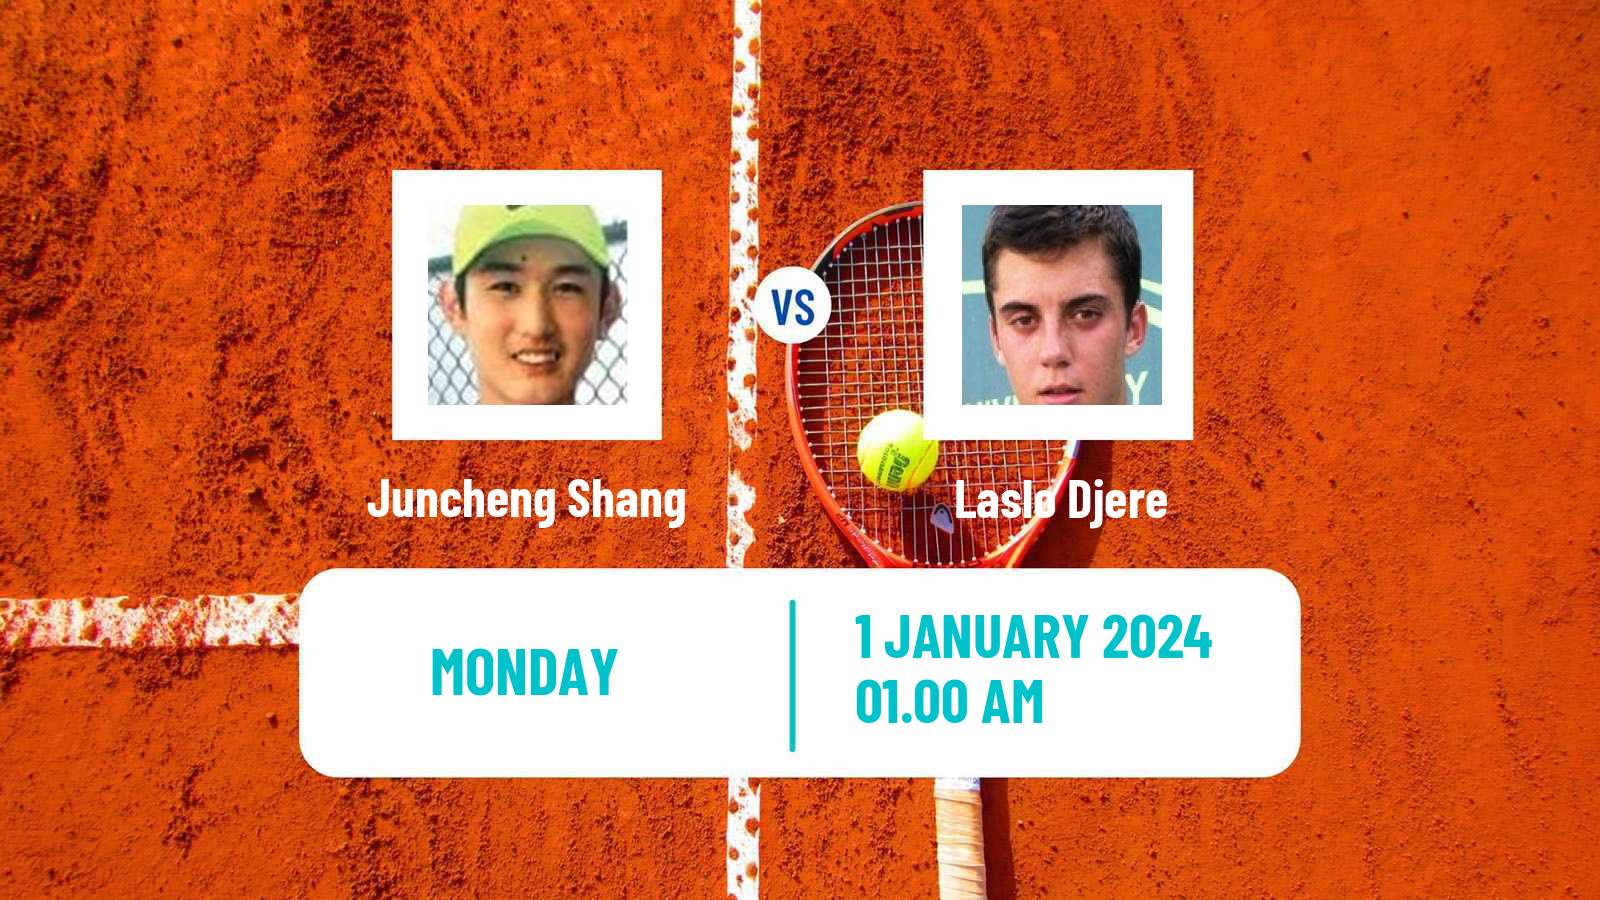 Tennis ATP Hong Kong Juncheng Shang - Laslo Djere